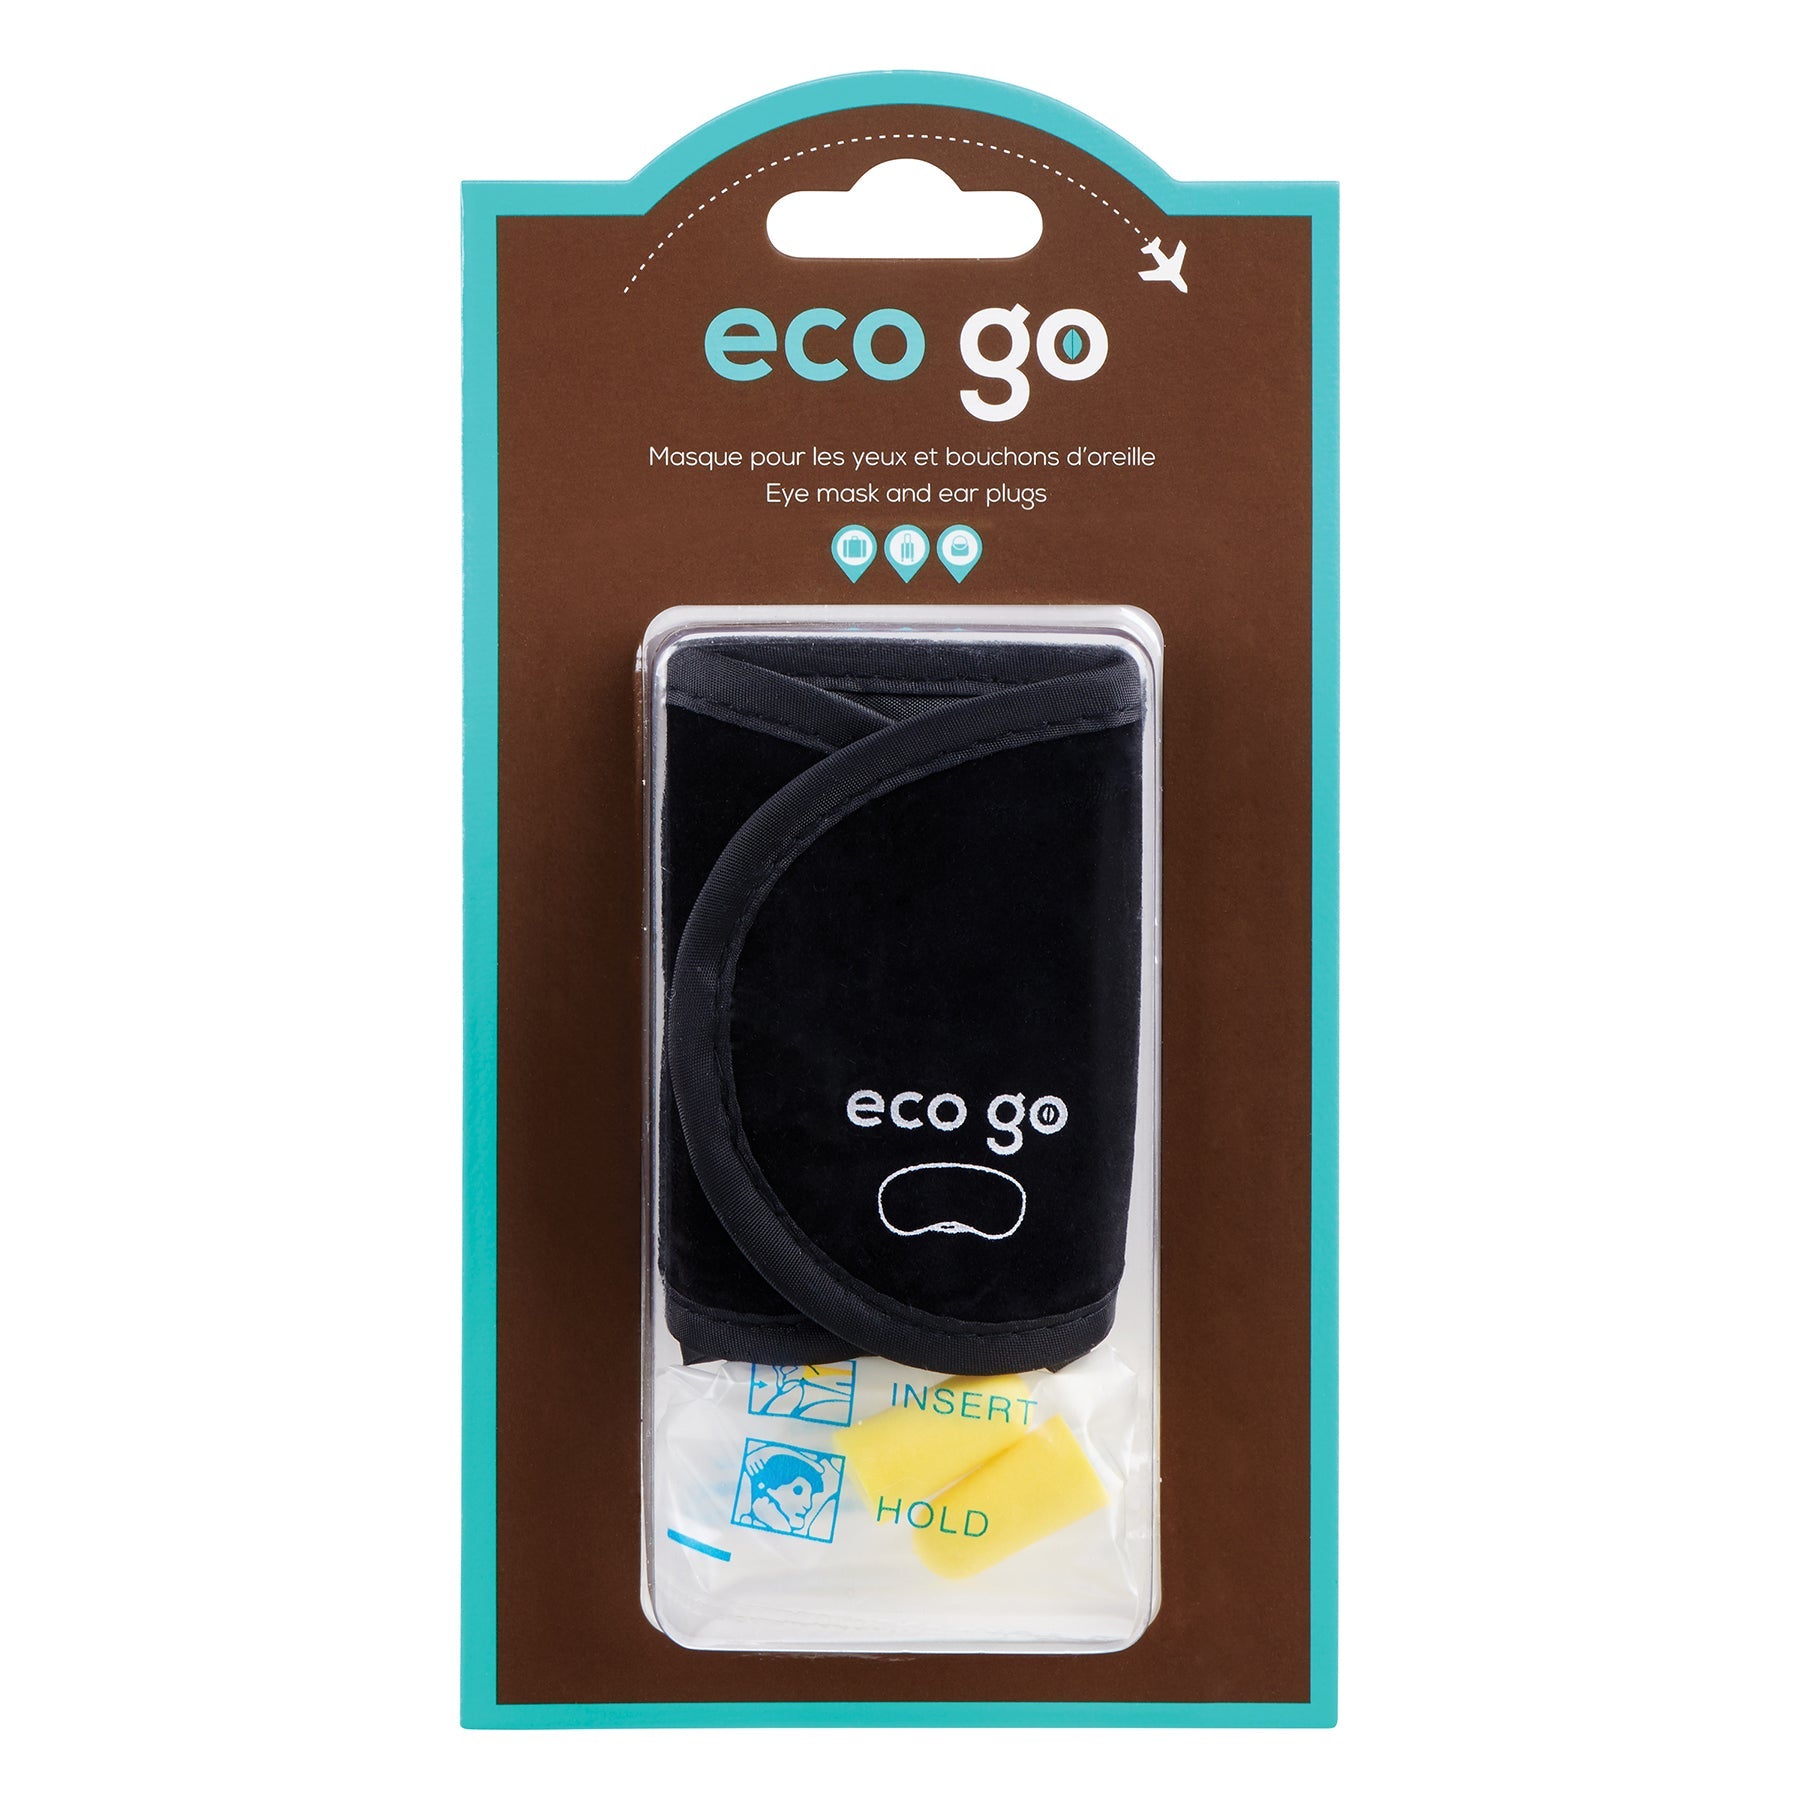 Eco Go Travel Eye Mask and Ear Plugs